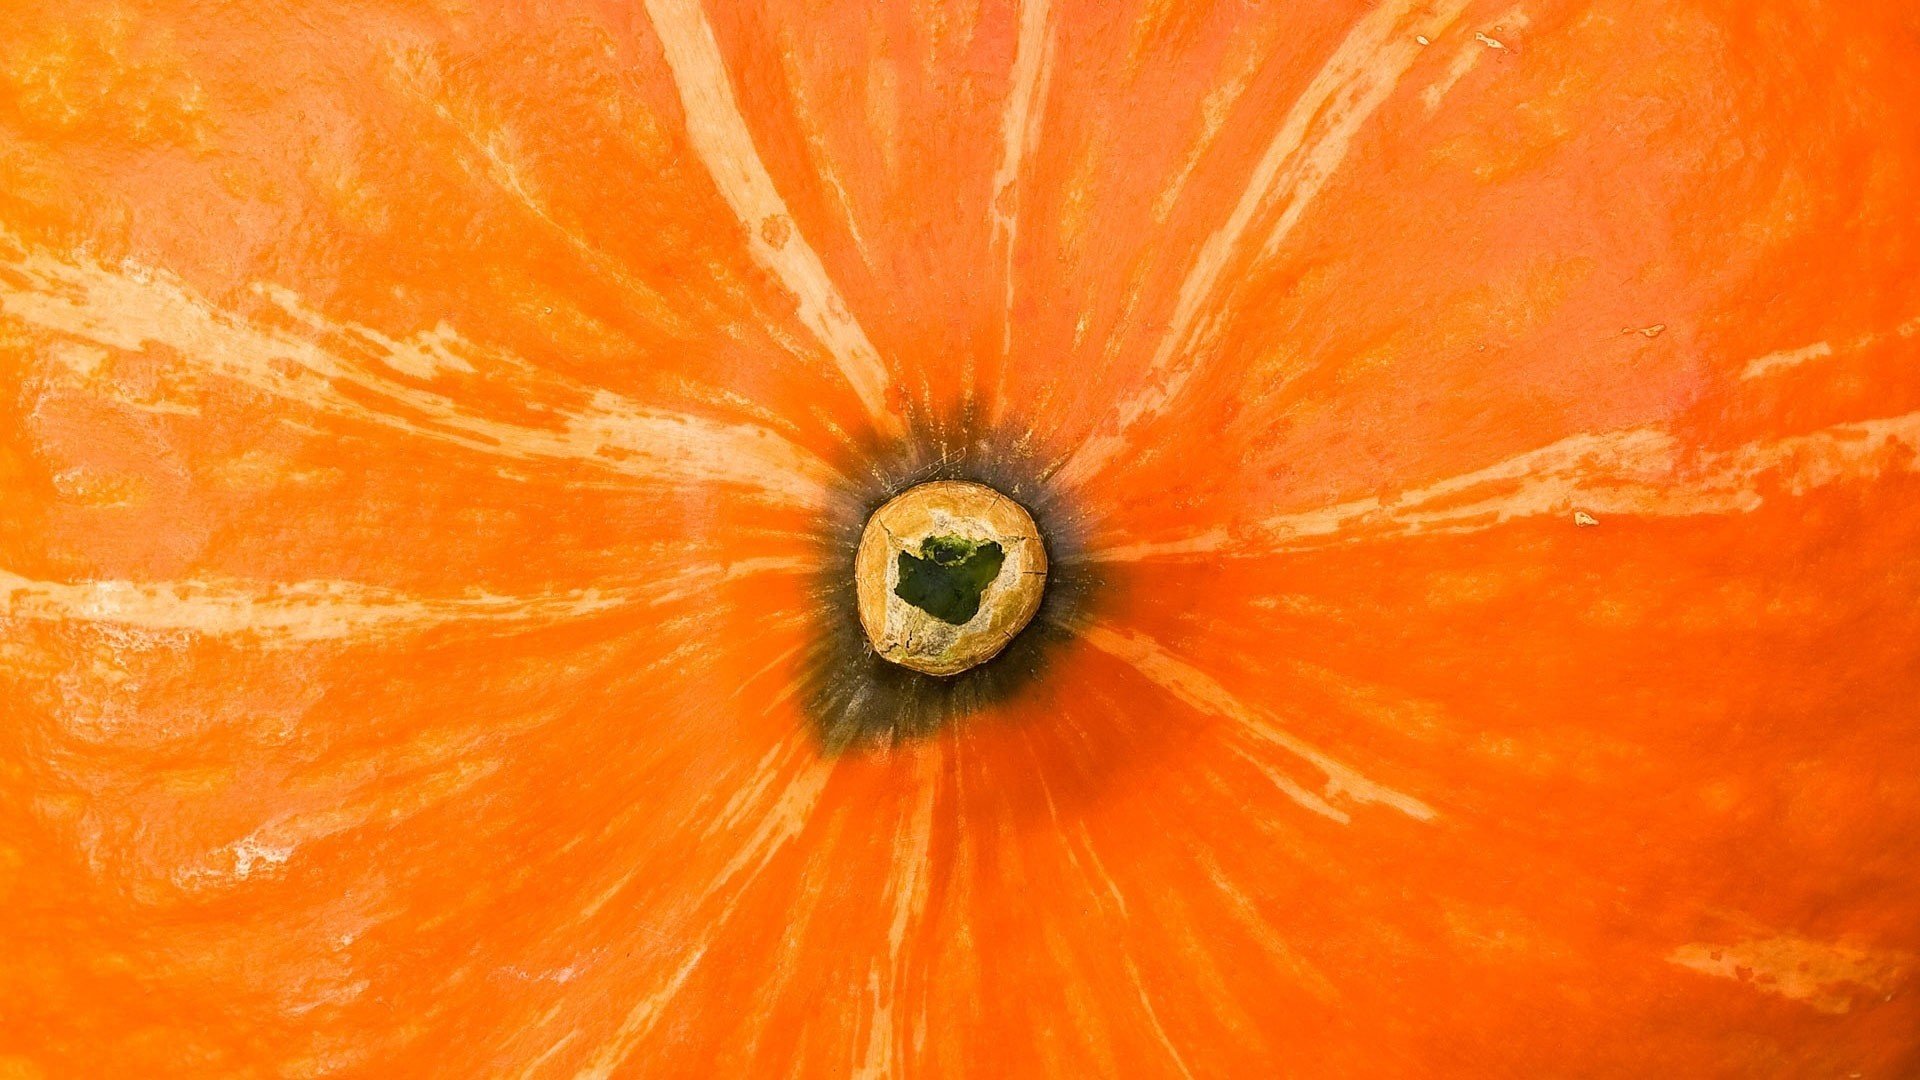 Оранжевый цветок с шариком посередине